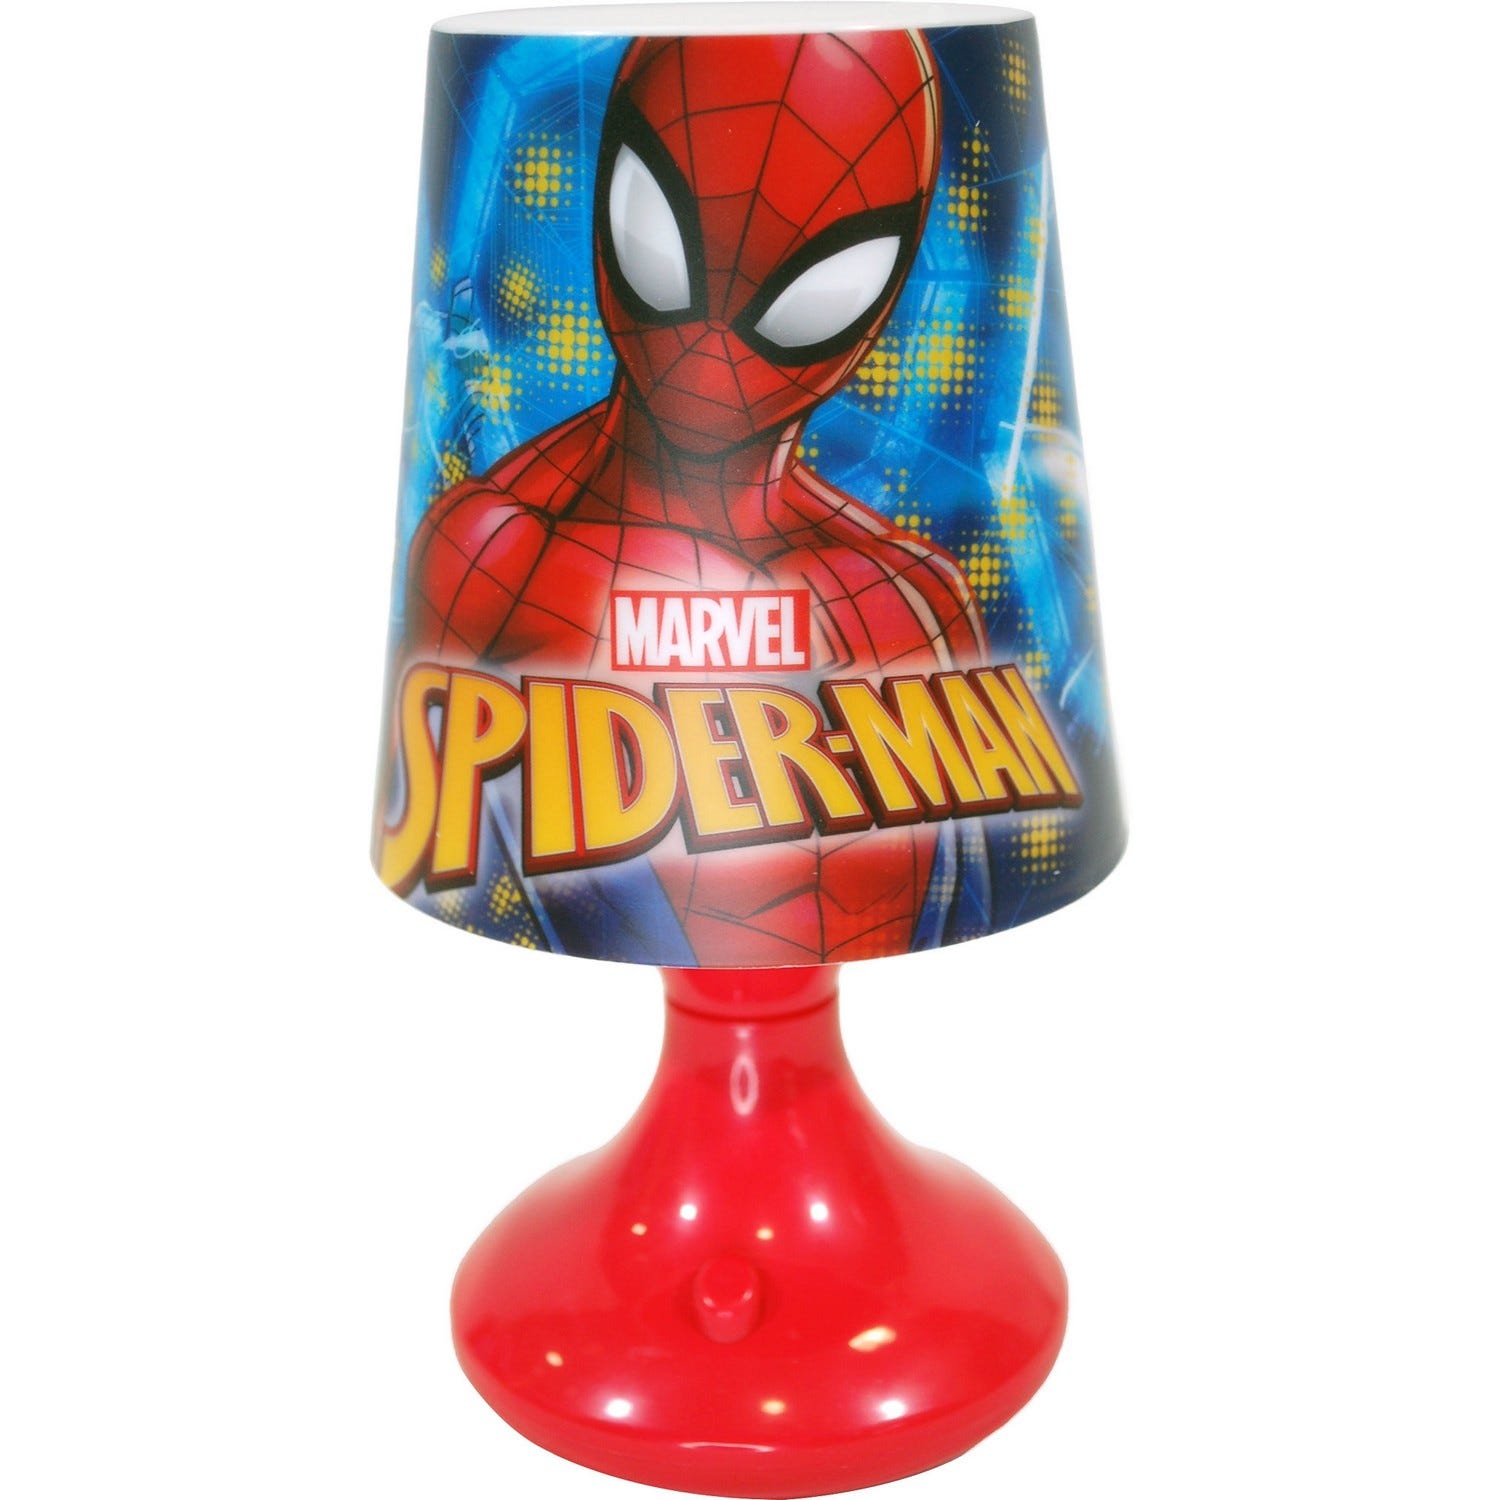 Acheter Veilleuse - Spiderman Rouge ? Bon et bon marché